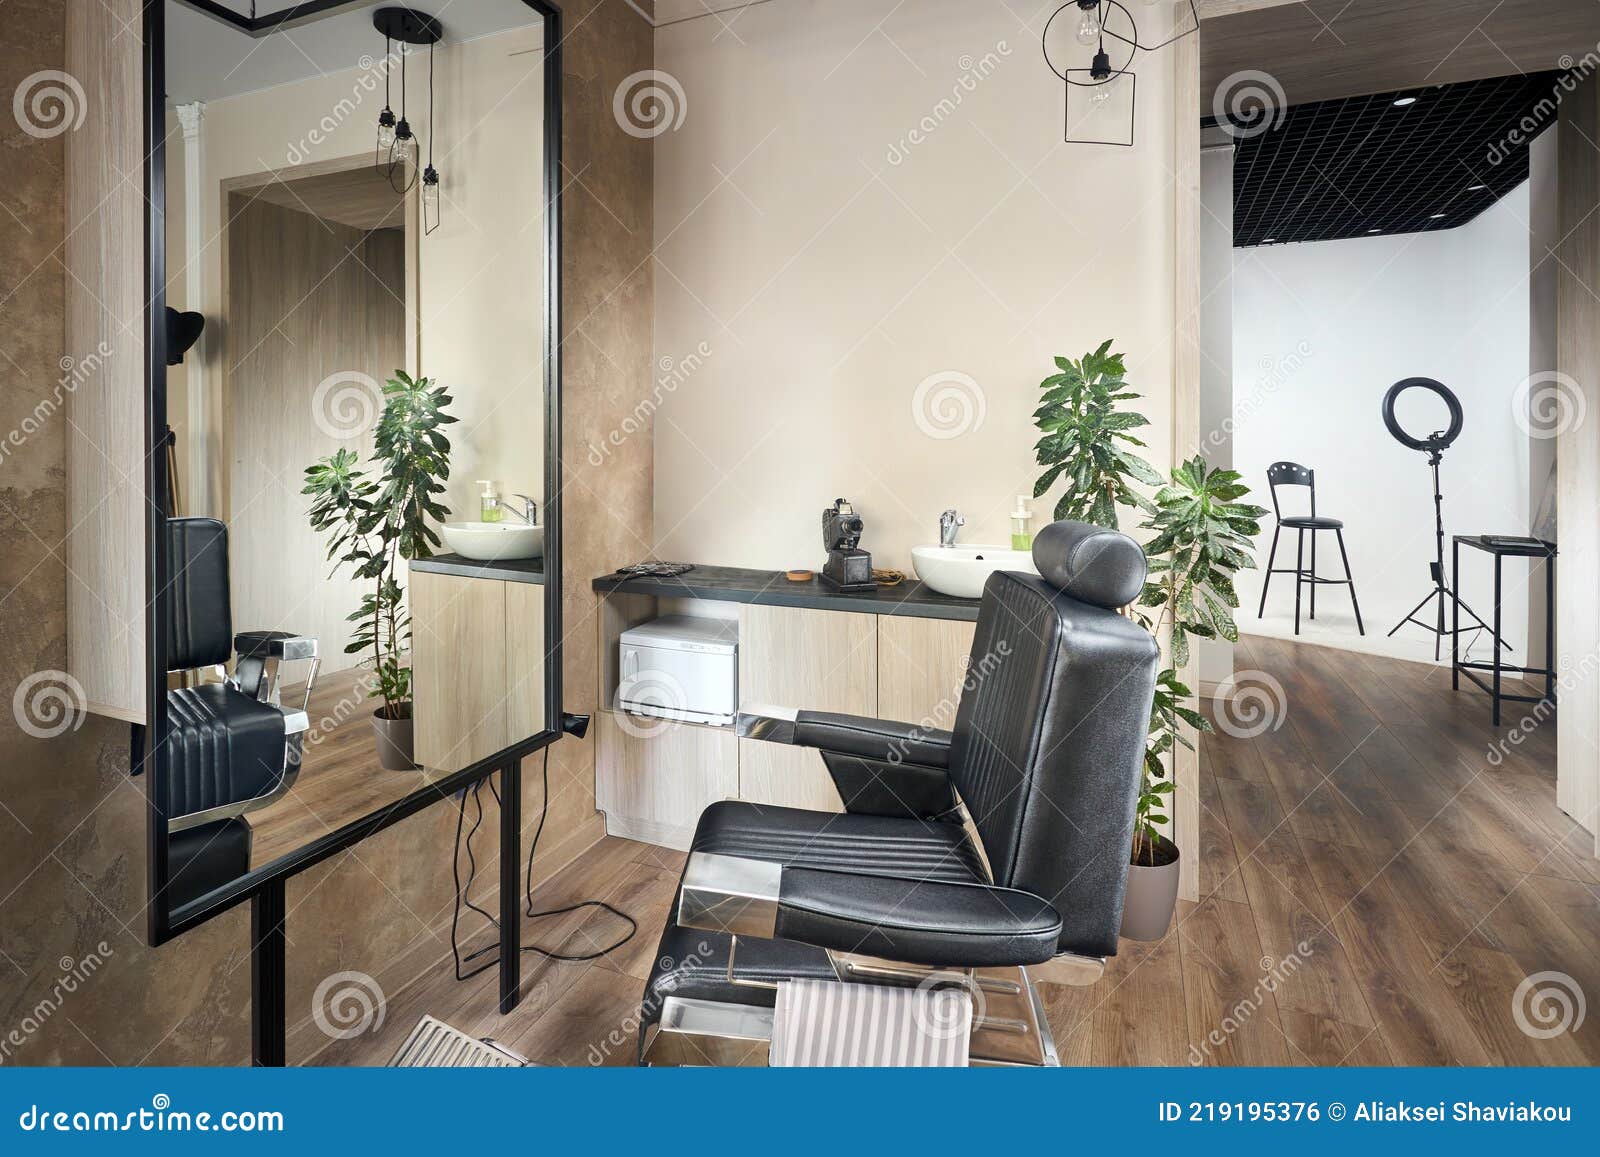 Дизайн парикмахерской студии: создаем уютное пространство для клиентов